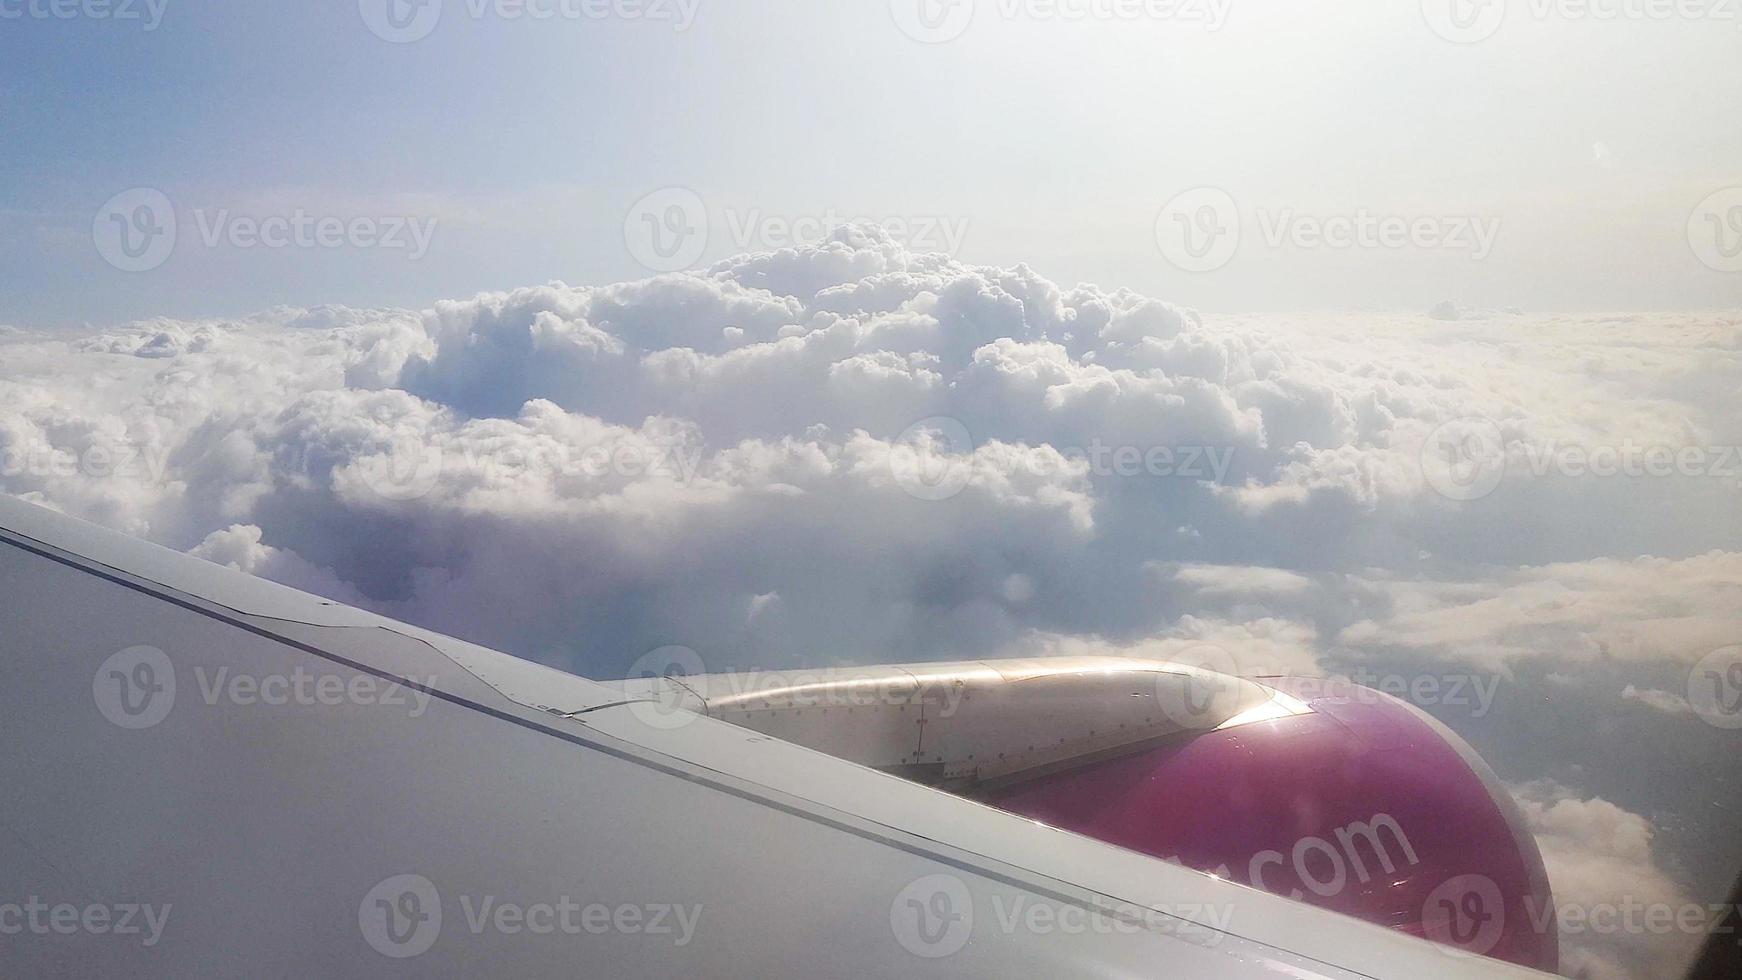 volando sobre las nubes. vista desde la ventana del pasajero del avión con nubes y horizonte. foto